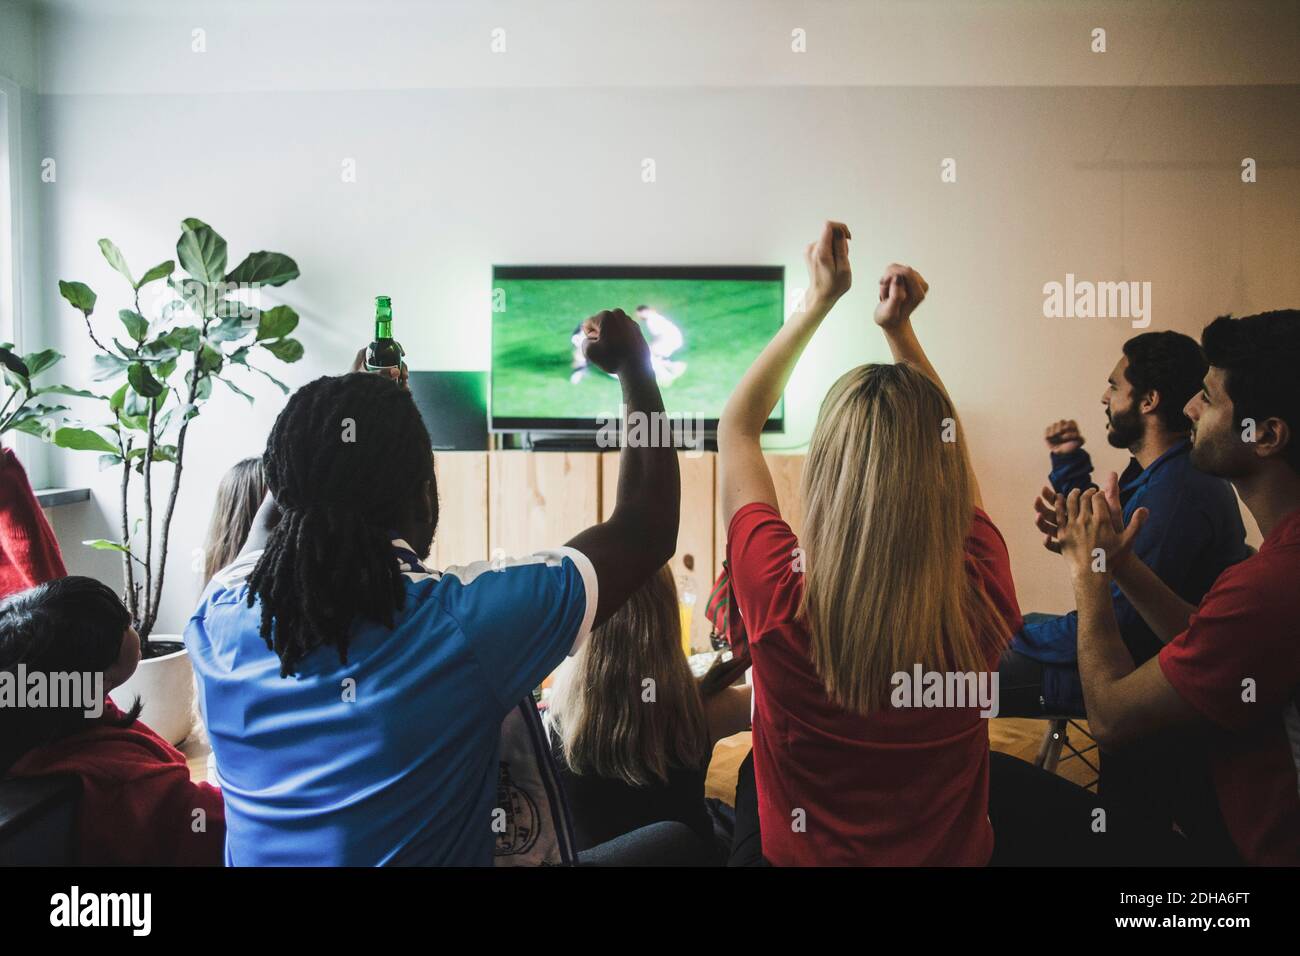 Des amis joyeux aux bras levés regardant un match de football dans la vie chambre Banque D'Images